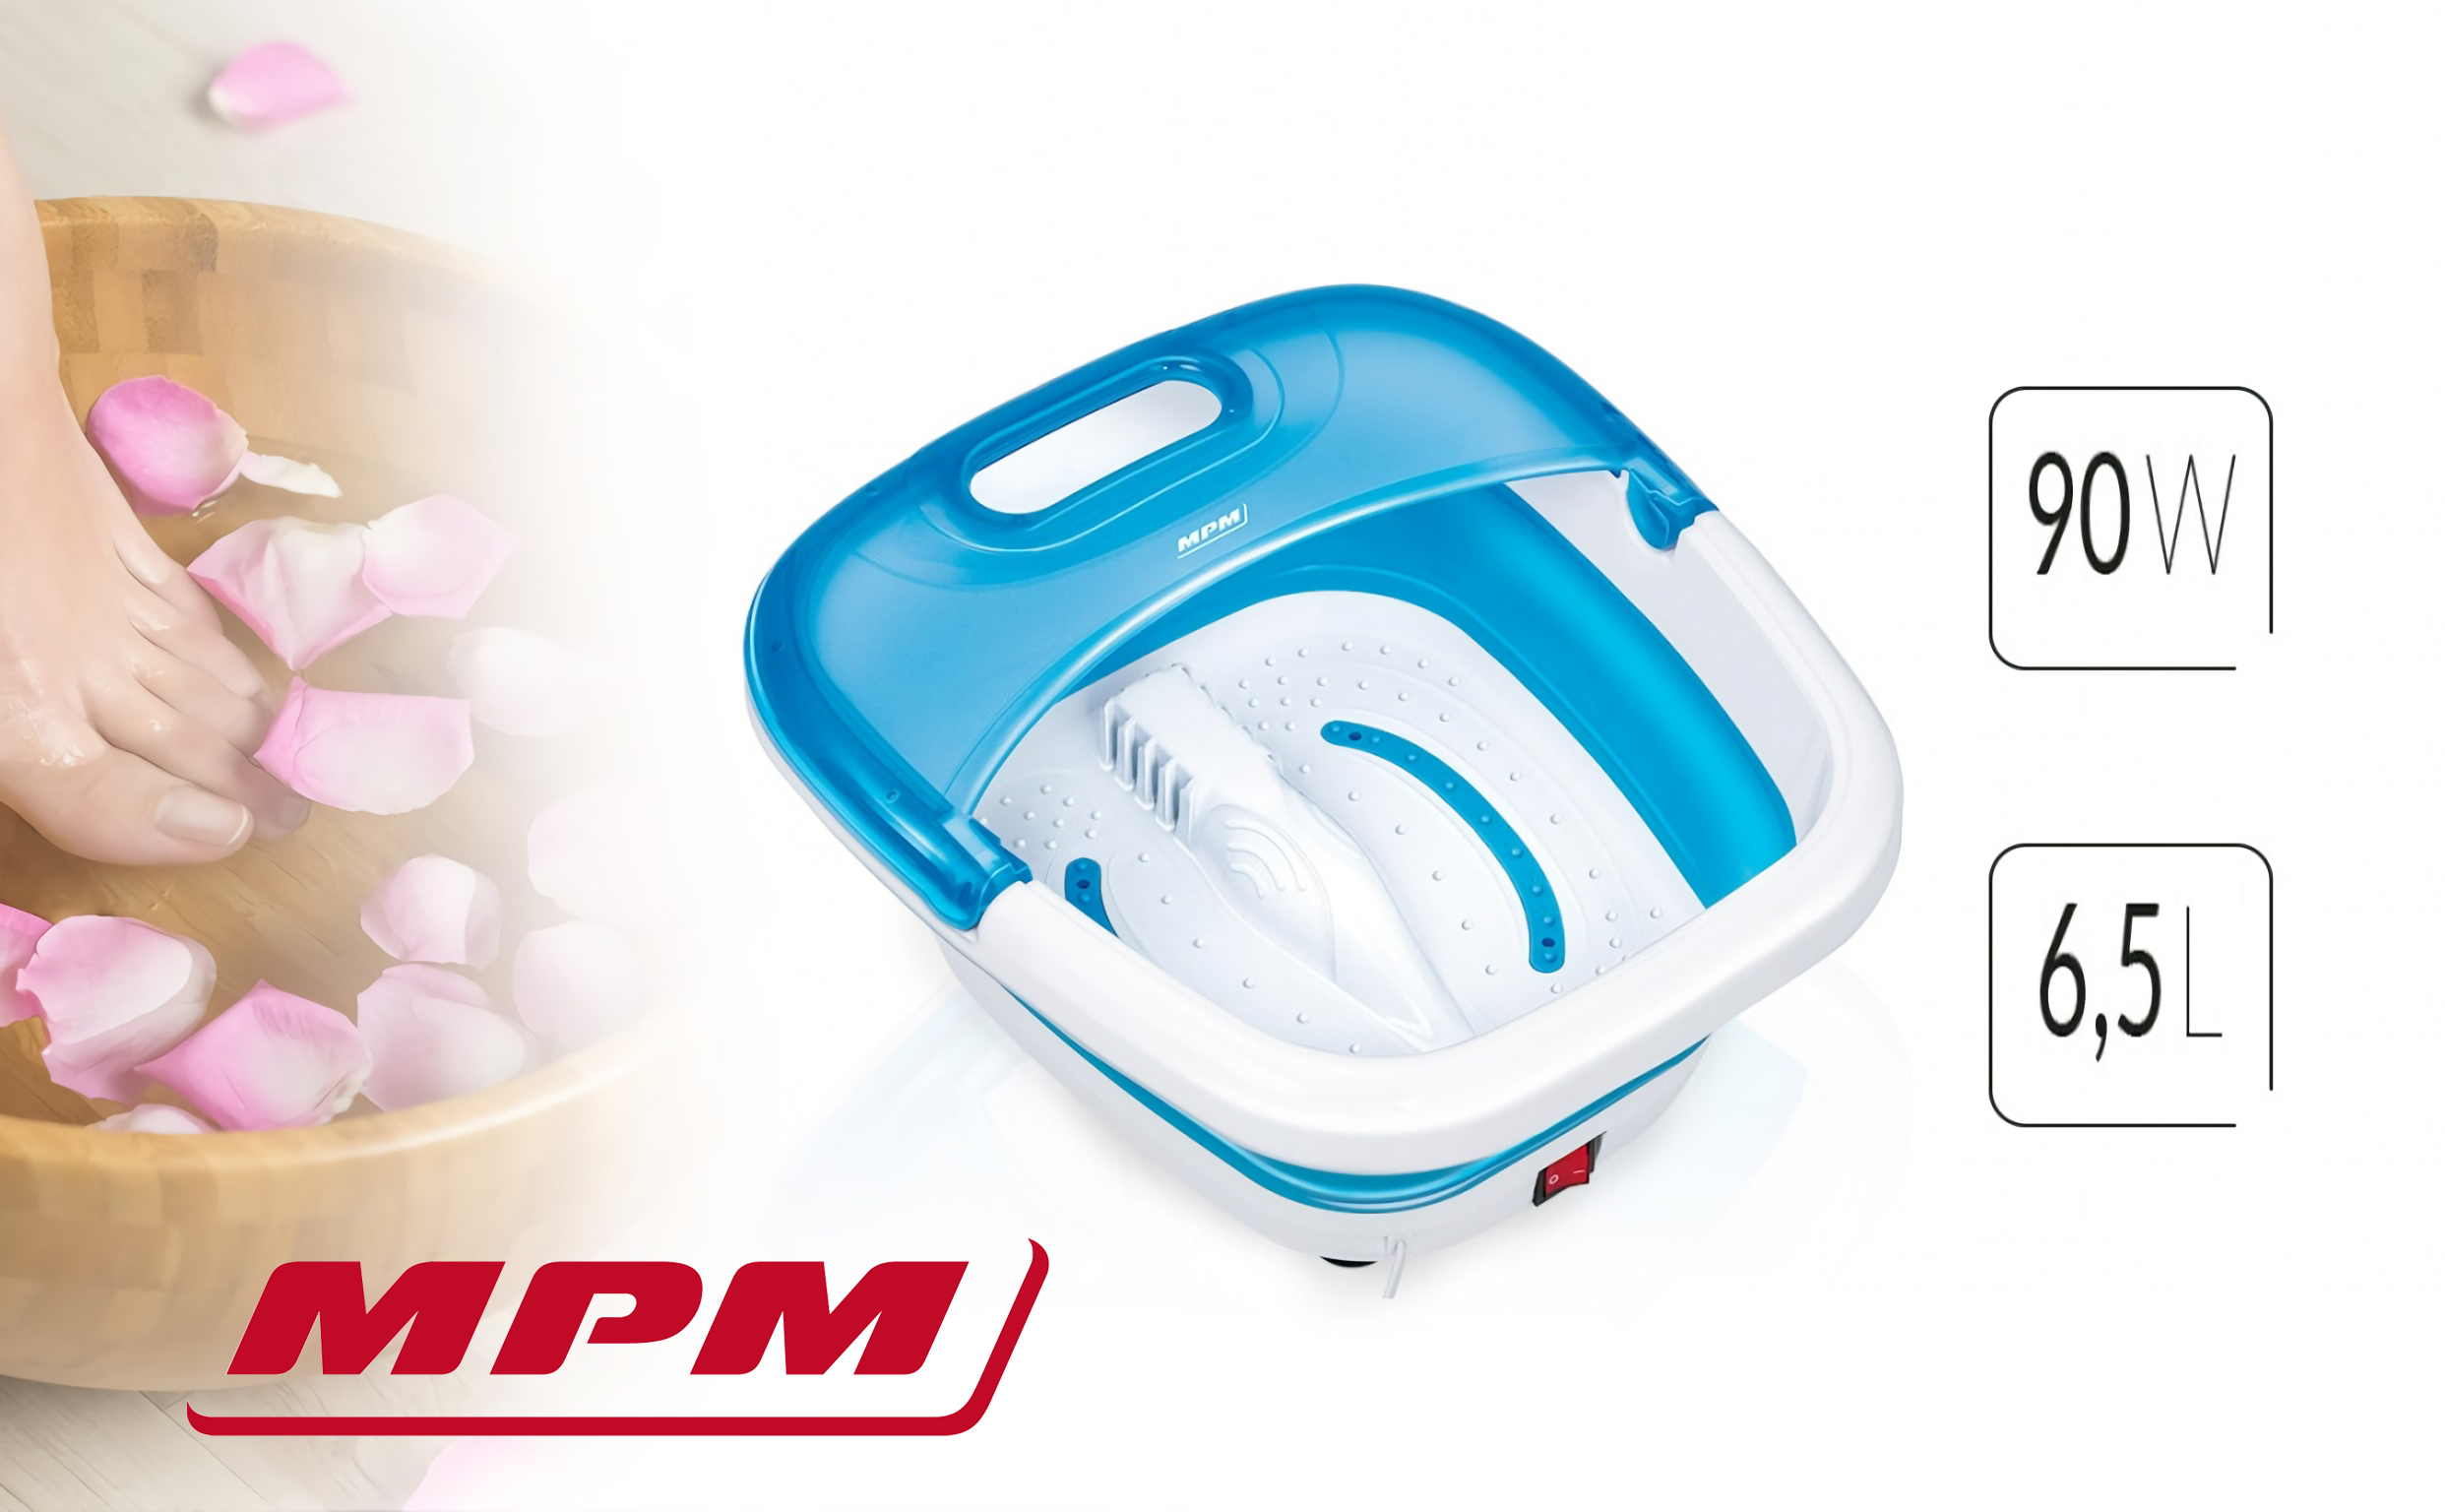 MPM MMS-03 Masajeador de Pies con Agua, masaje de Burbujas y por vibración, Mantener Temperatura, infrarrojos, Contenedor para Sales, 90 W